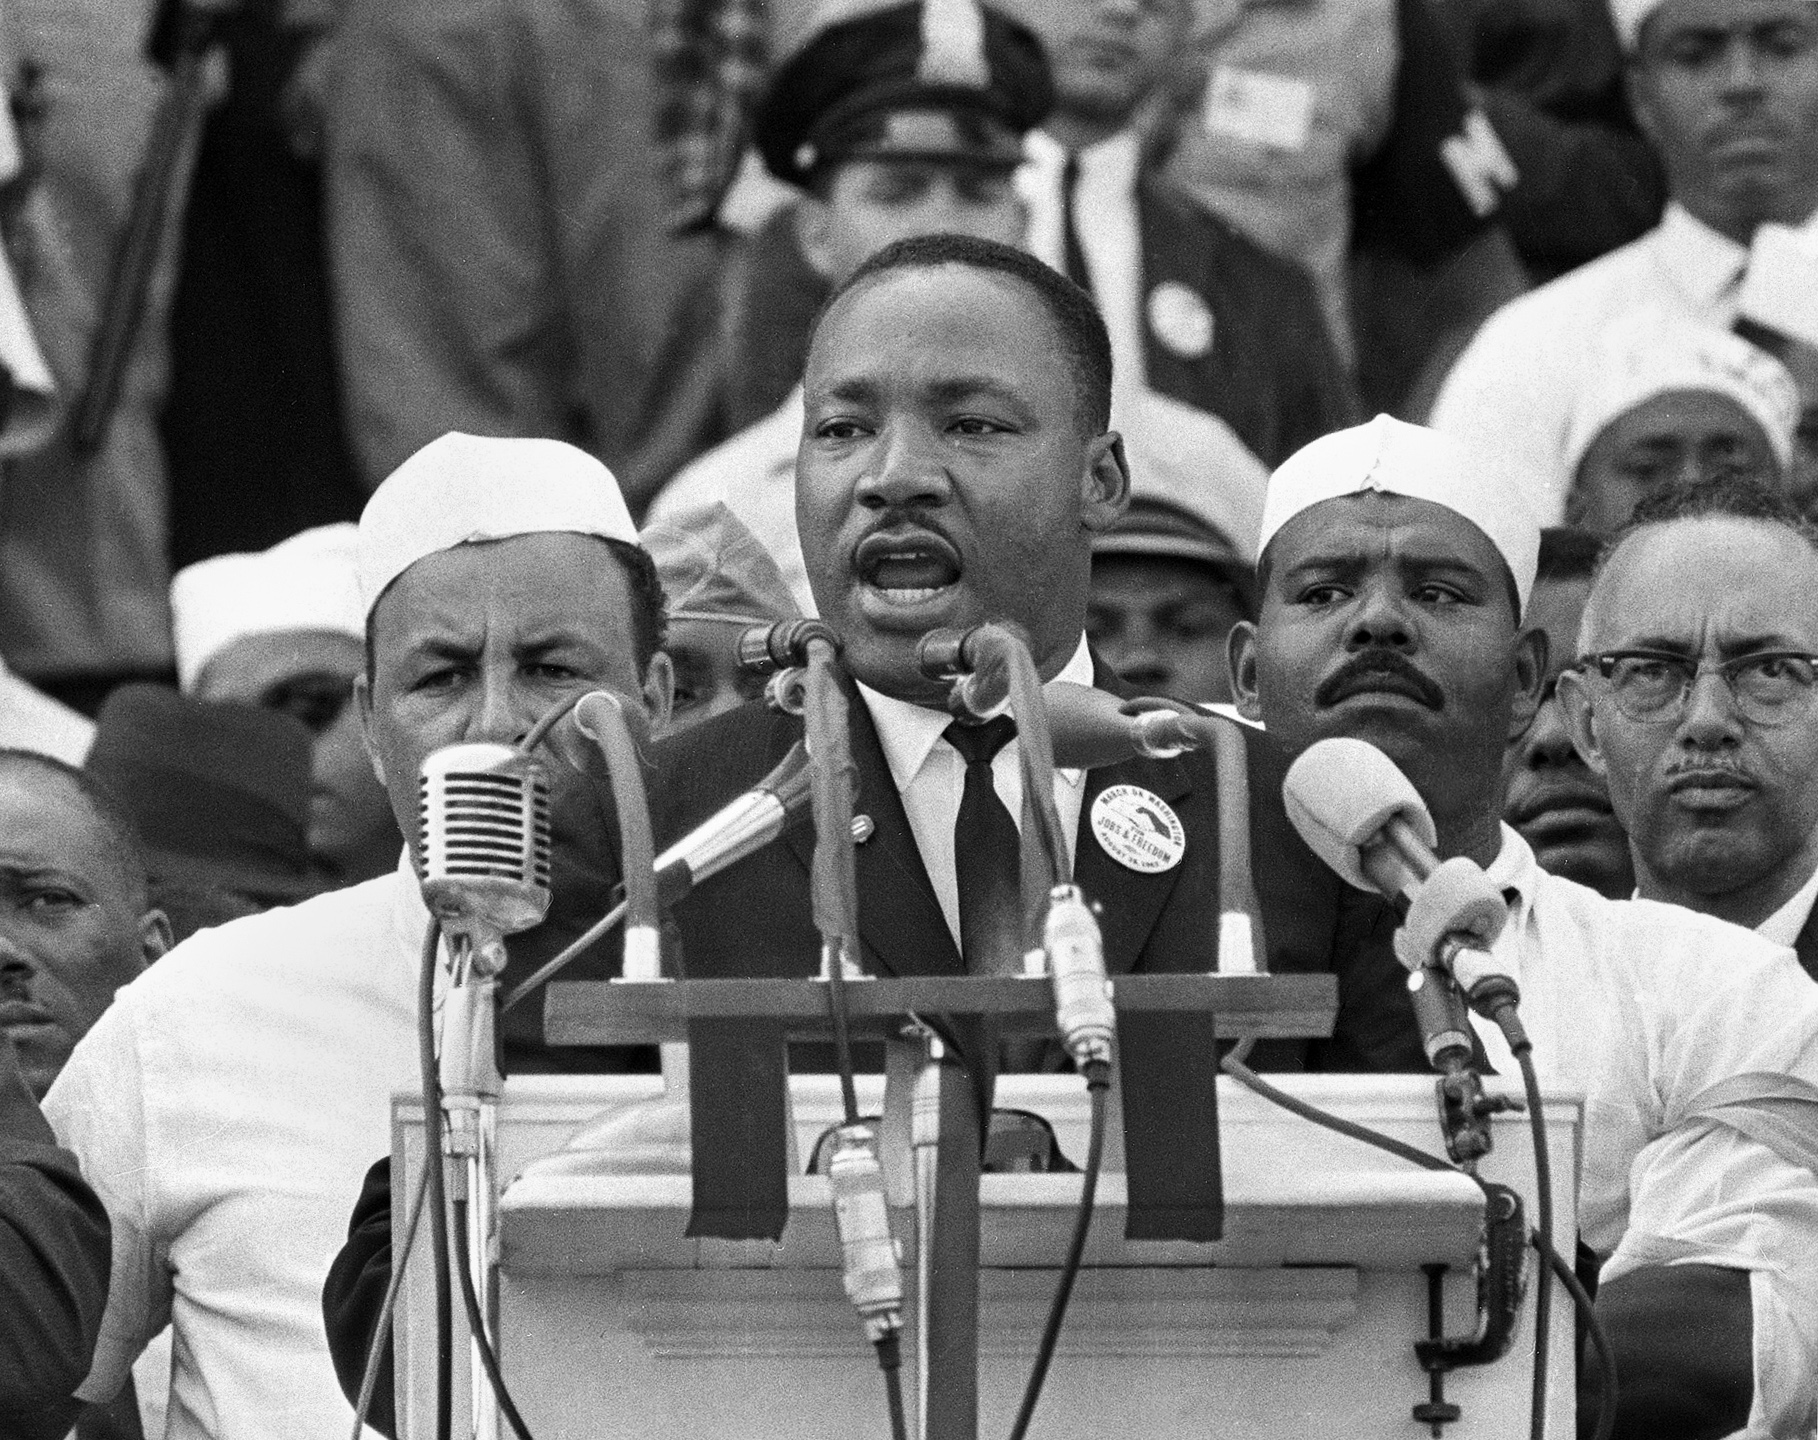 Ο Μάρτιν Λούθερ Κινγκ εκφωνεί τον περίφημο λόγο του που έμεινε γνωστός ως «Έχω ένα όνειρο» («I have a dream»), κατά τη διάρκεια πορείας υπέρ των δικαιωμάτων των Αφροαμερικανών, στο Μνημείο του Λίνκλον, στην Ουάσινγκτον, το 1963. Στην πορεία συμμετείχαν περισσότερα από 200.000 άτομα. (AP Photo / Καθημερινή)  